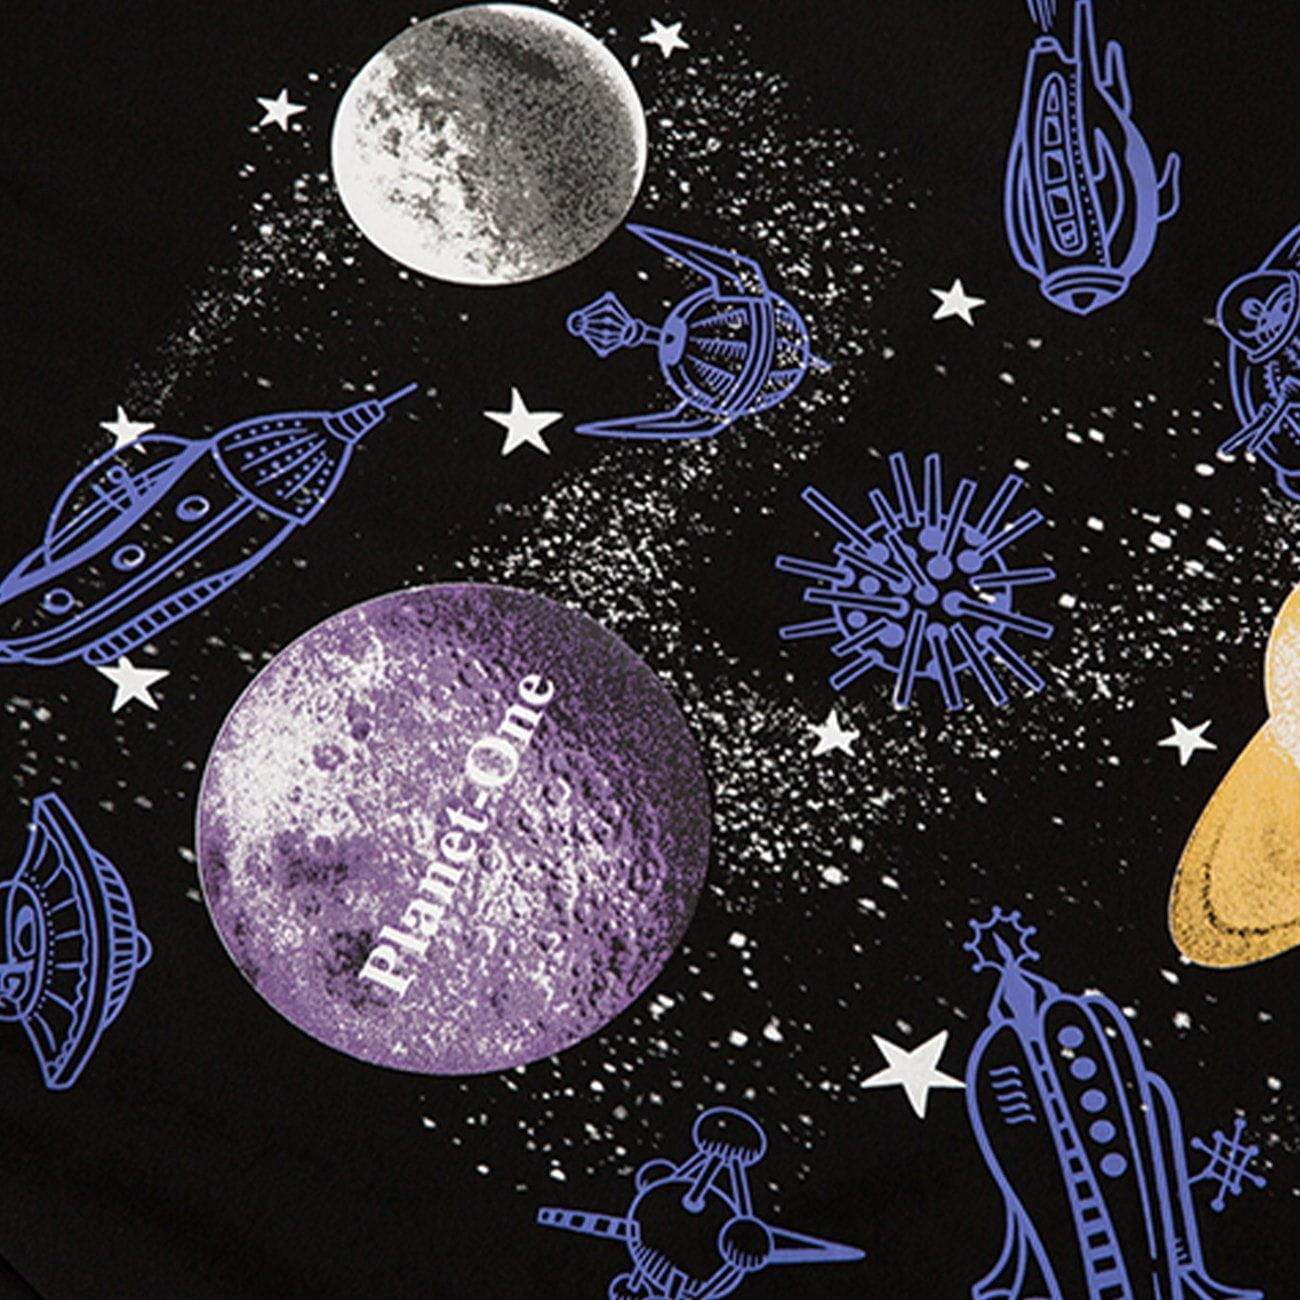 Justnotag Spaceship Planet Sweatshirt mit Buchstabendruck